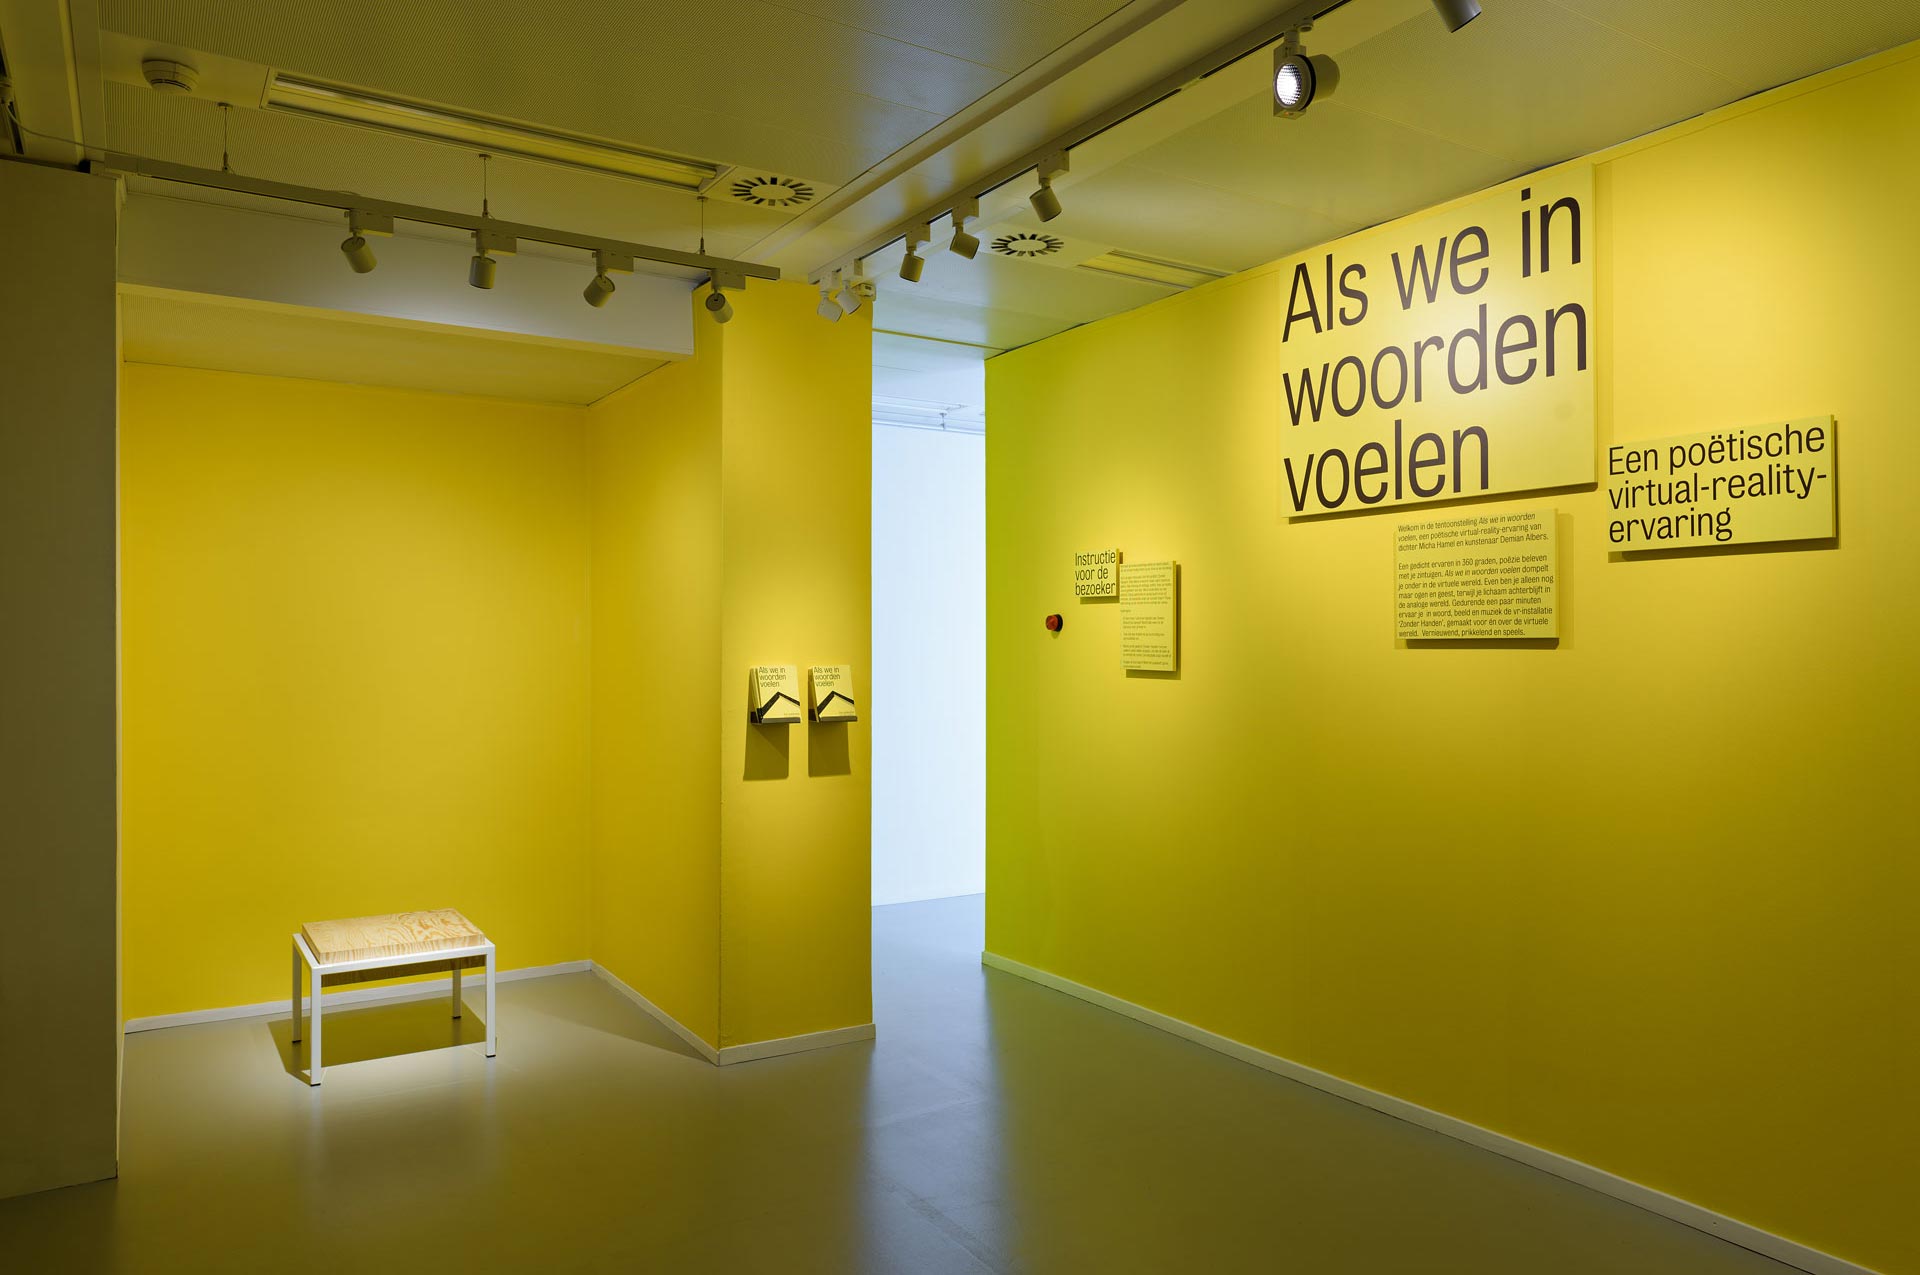 VR-Ruimte Literatuur Museum, Den Haag,  werk van Jos Blom en Joh